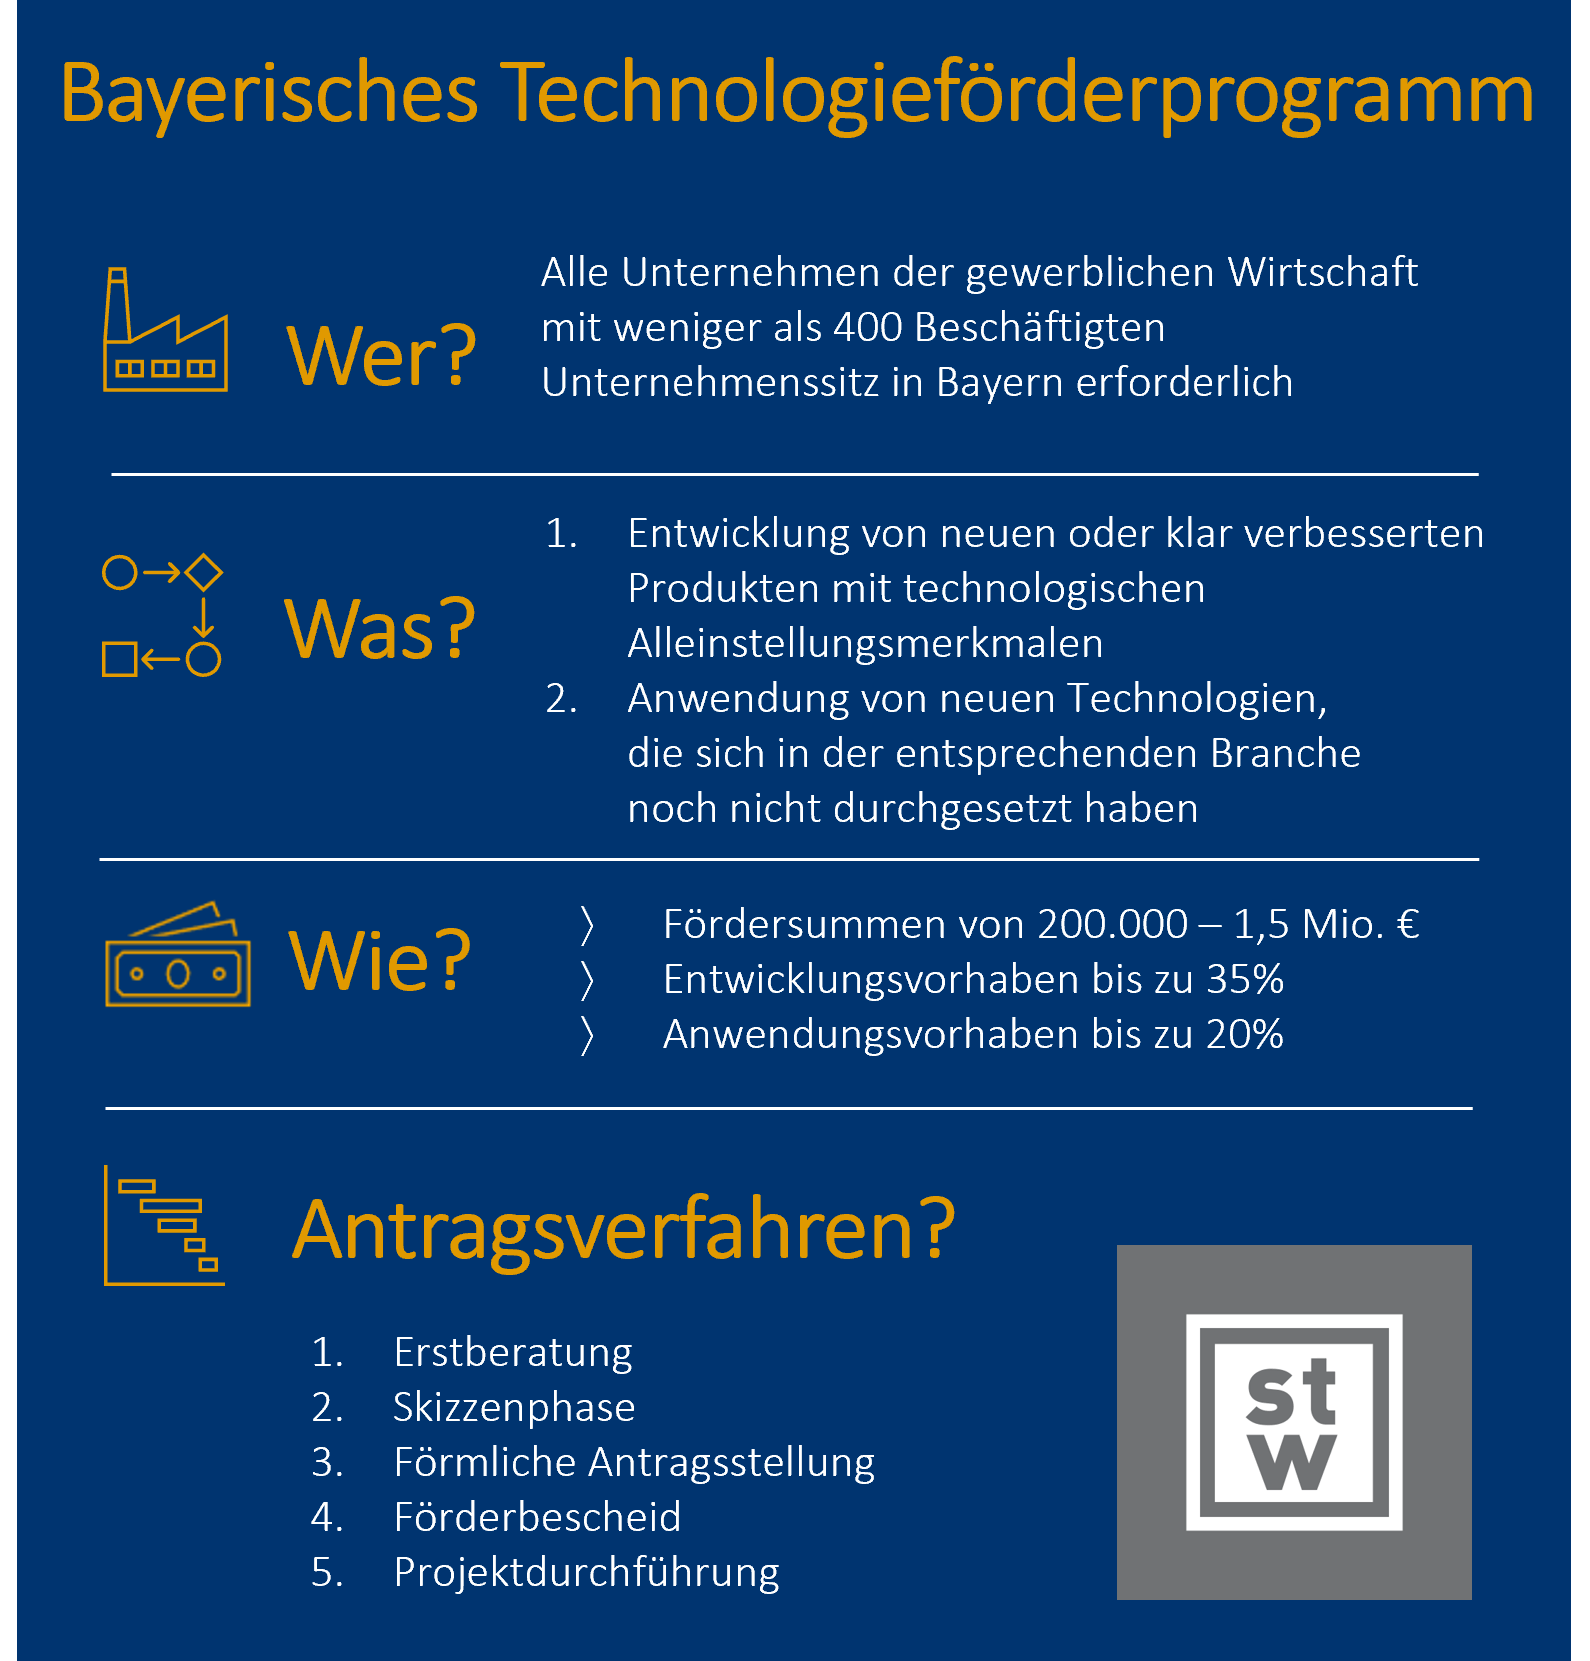 Technologieförderung in Bayern, Bayerisches Technologieförderprogramm, BayTP, innovationsförderung bayern, Bayerisches Verbundforschungsprogramm, Bayerisches Energieforschungsprogramm